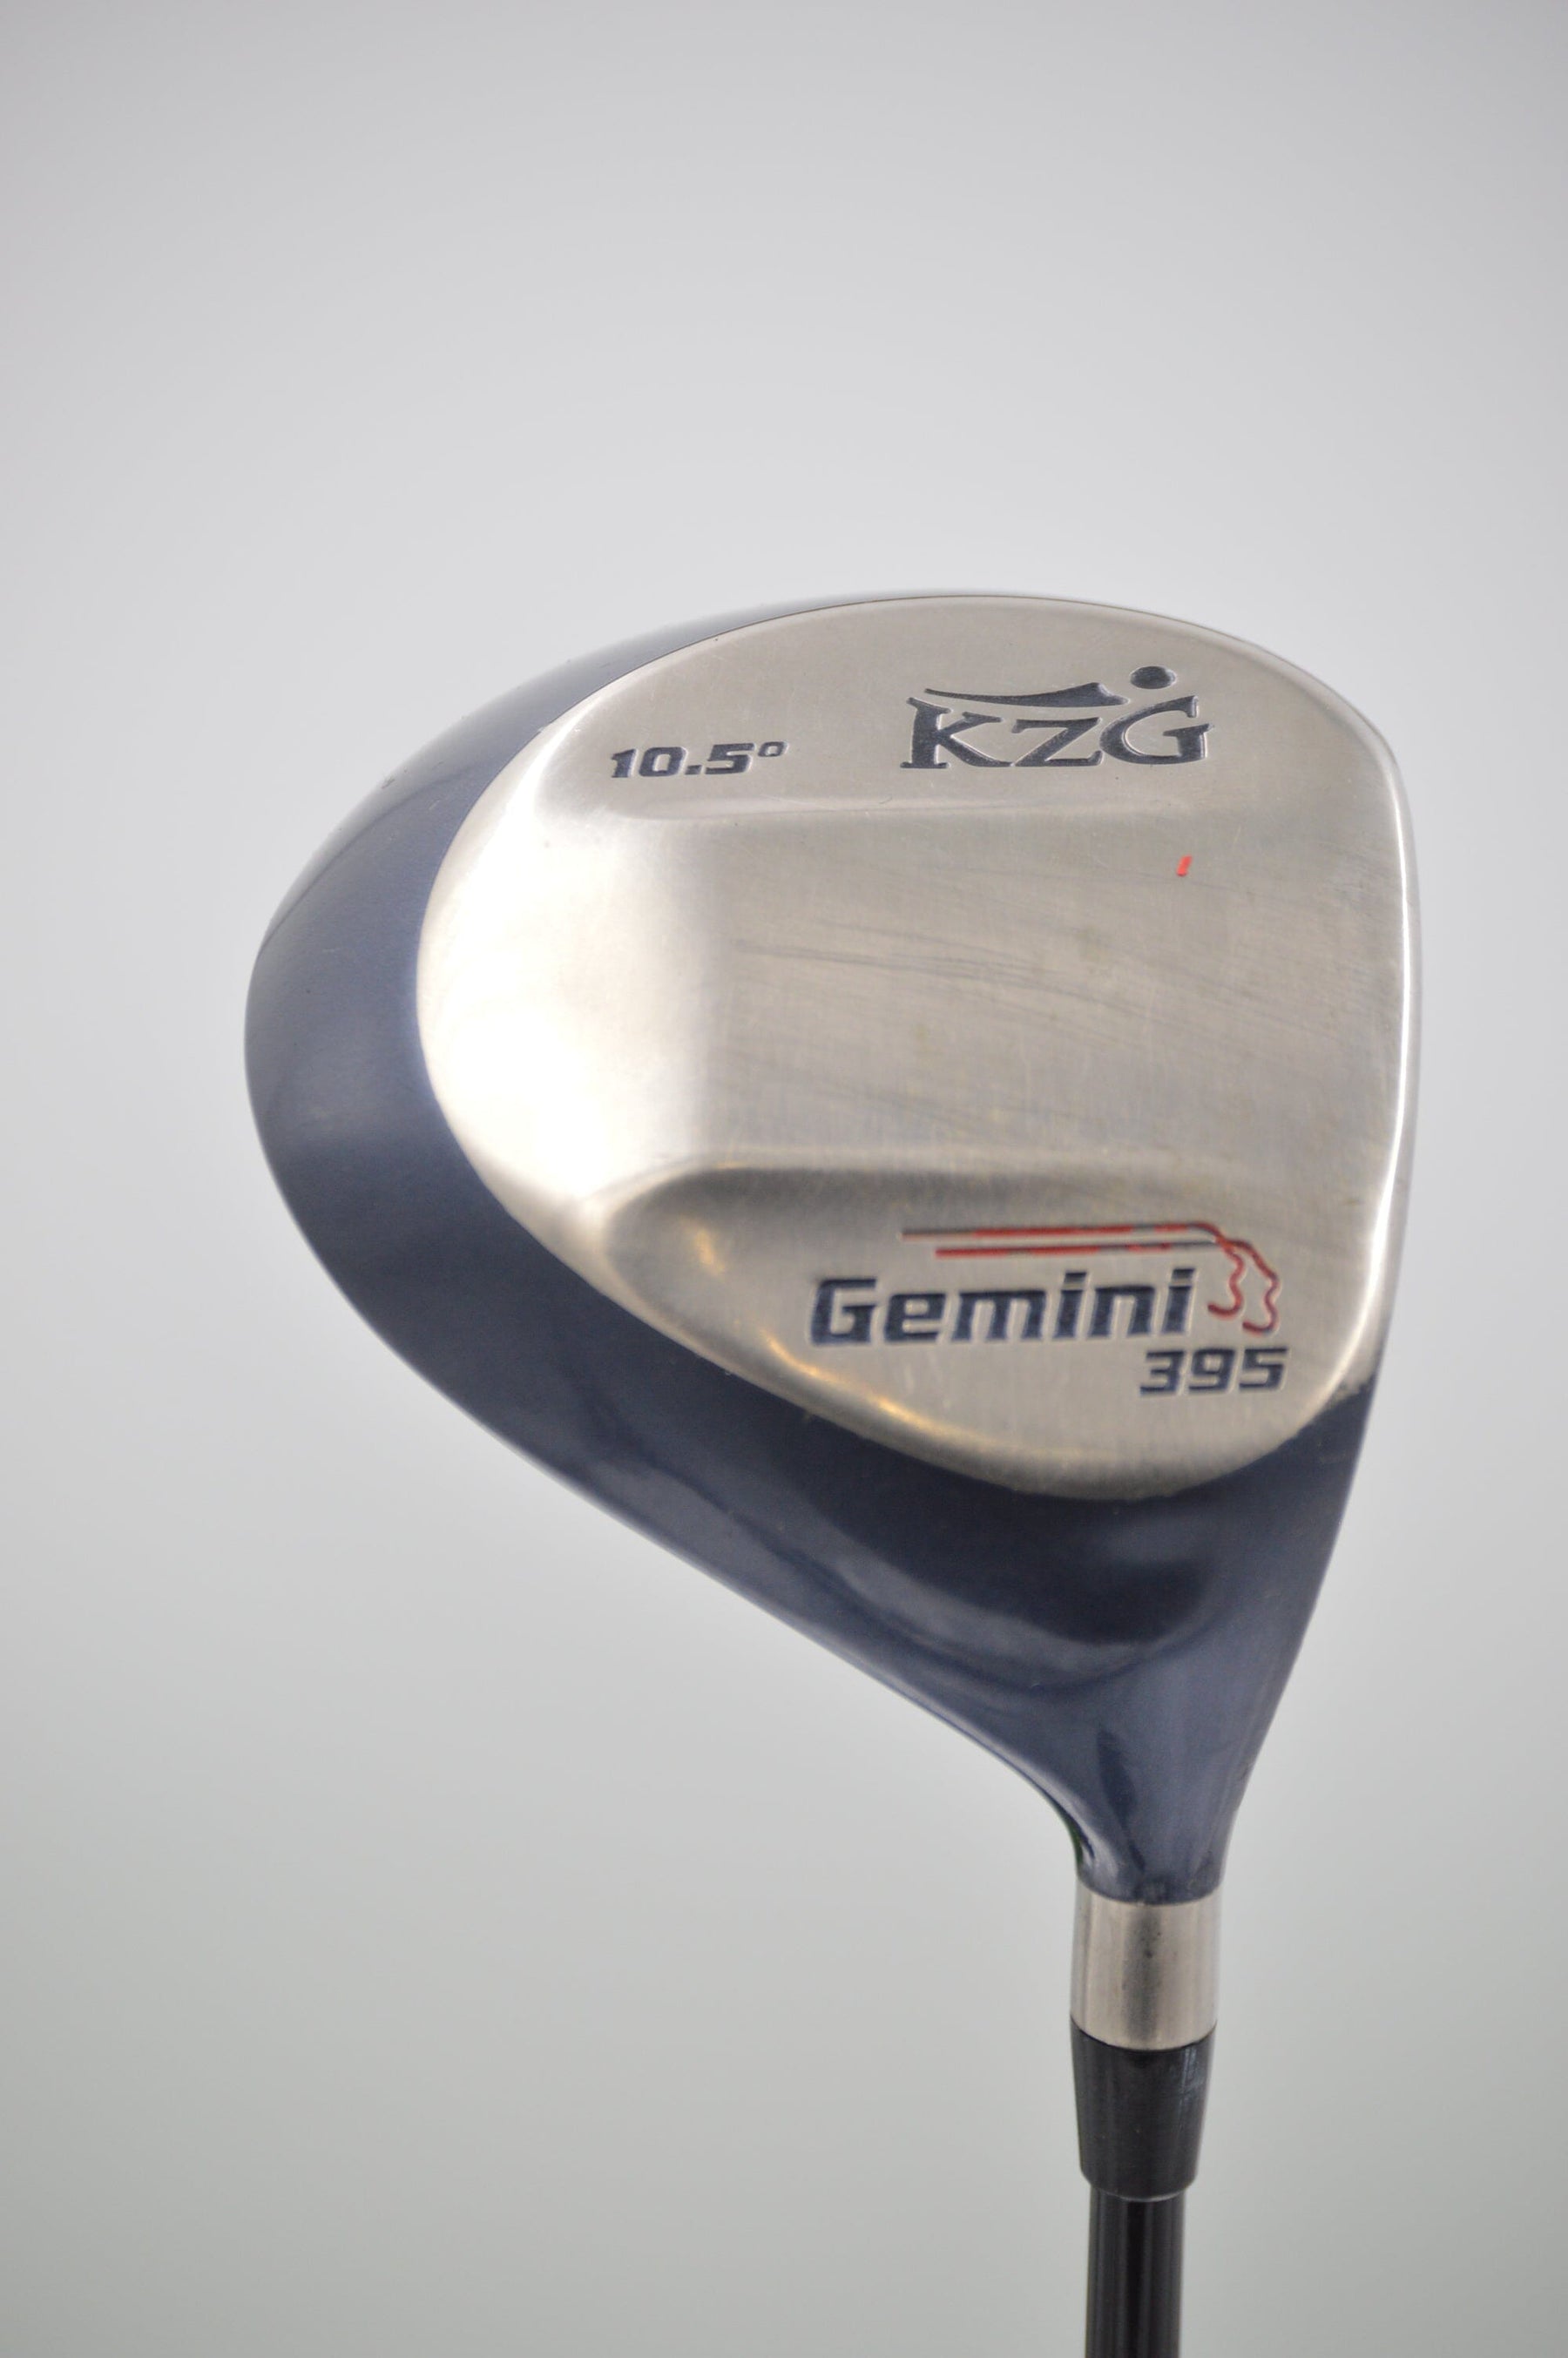 KZG Gemini 395 10.5 Degree Driver SR Flex Golf Clubs GolfRoots 